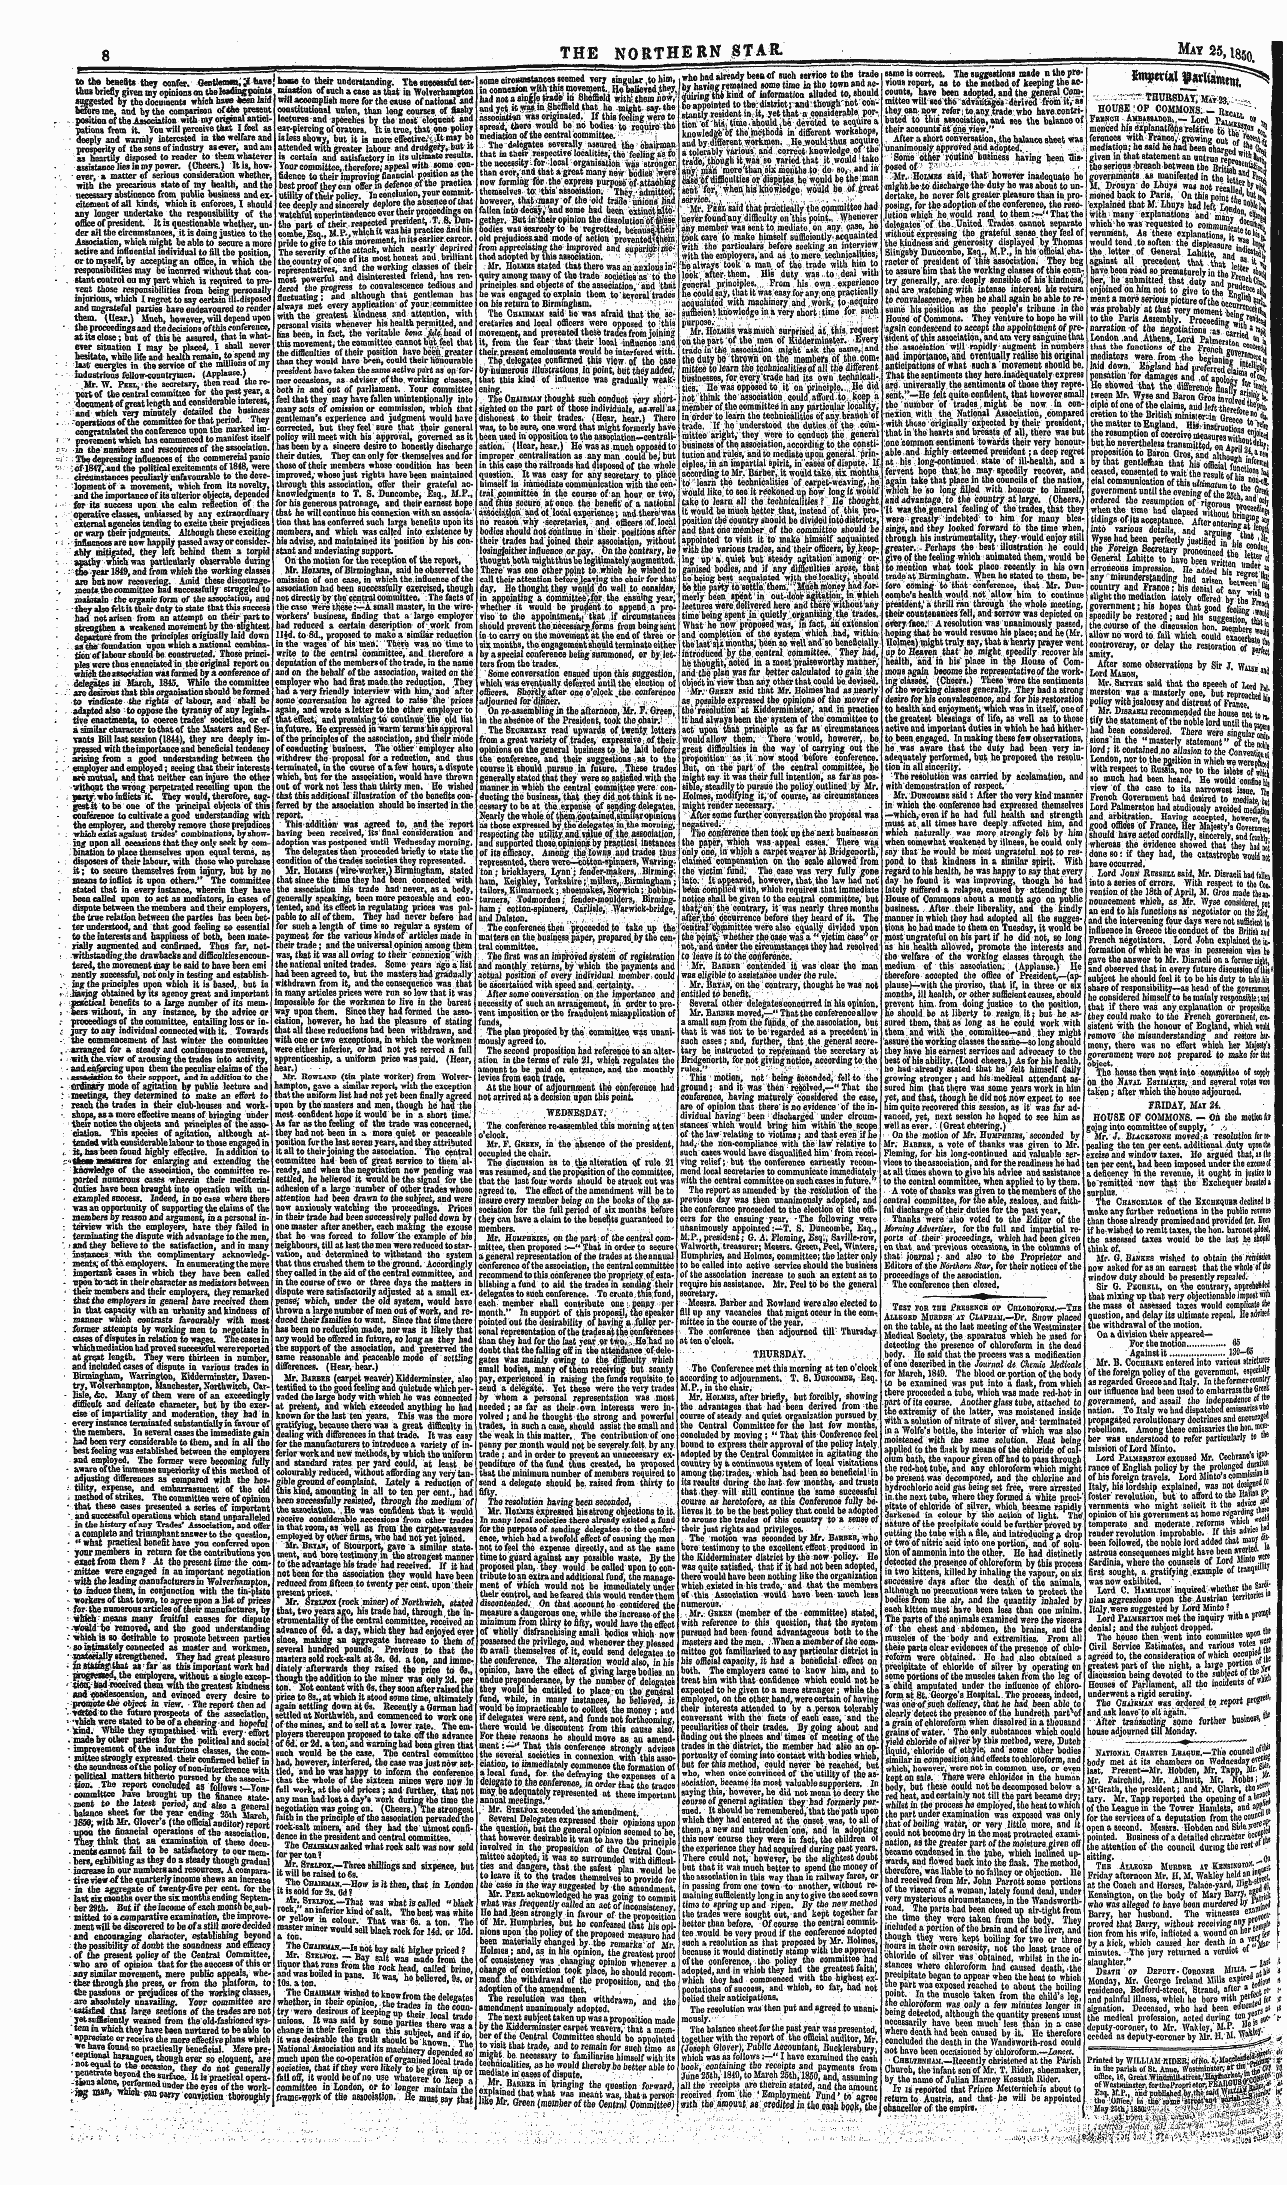 Northern Star (1837-1852): jS F Y, 3rd edition - 5n^Etwl Mii&Mm